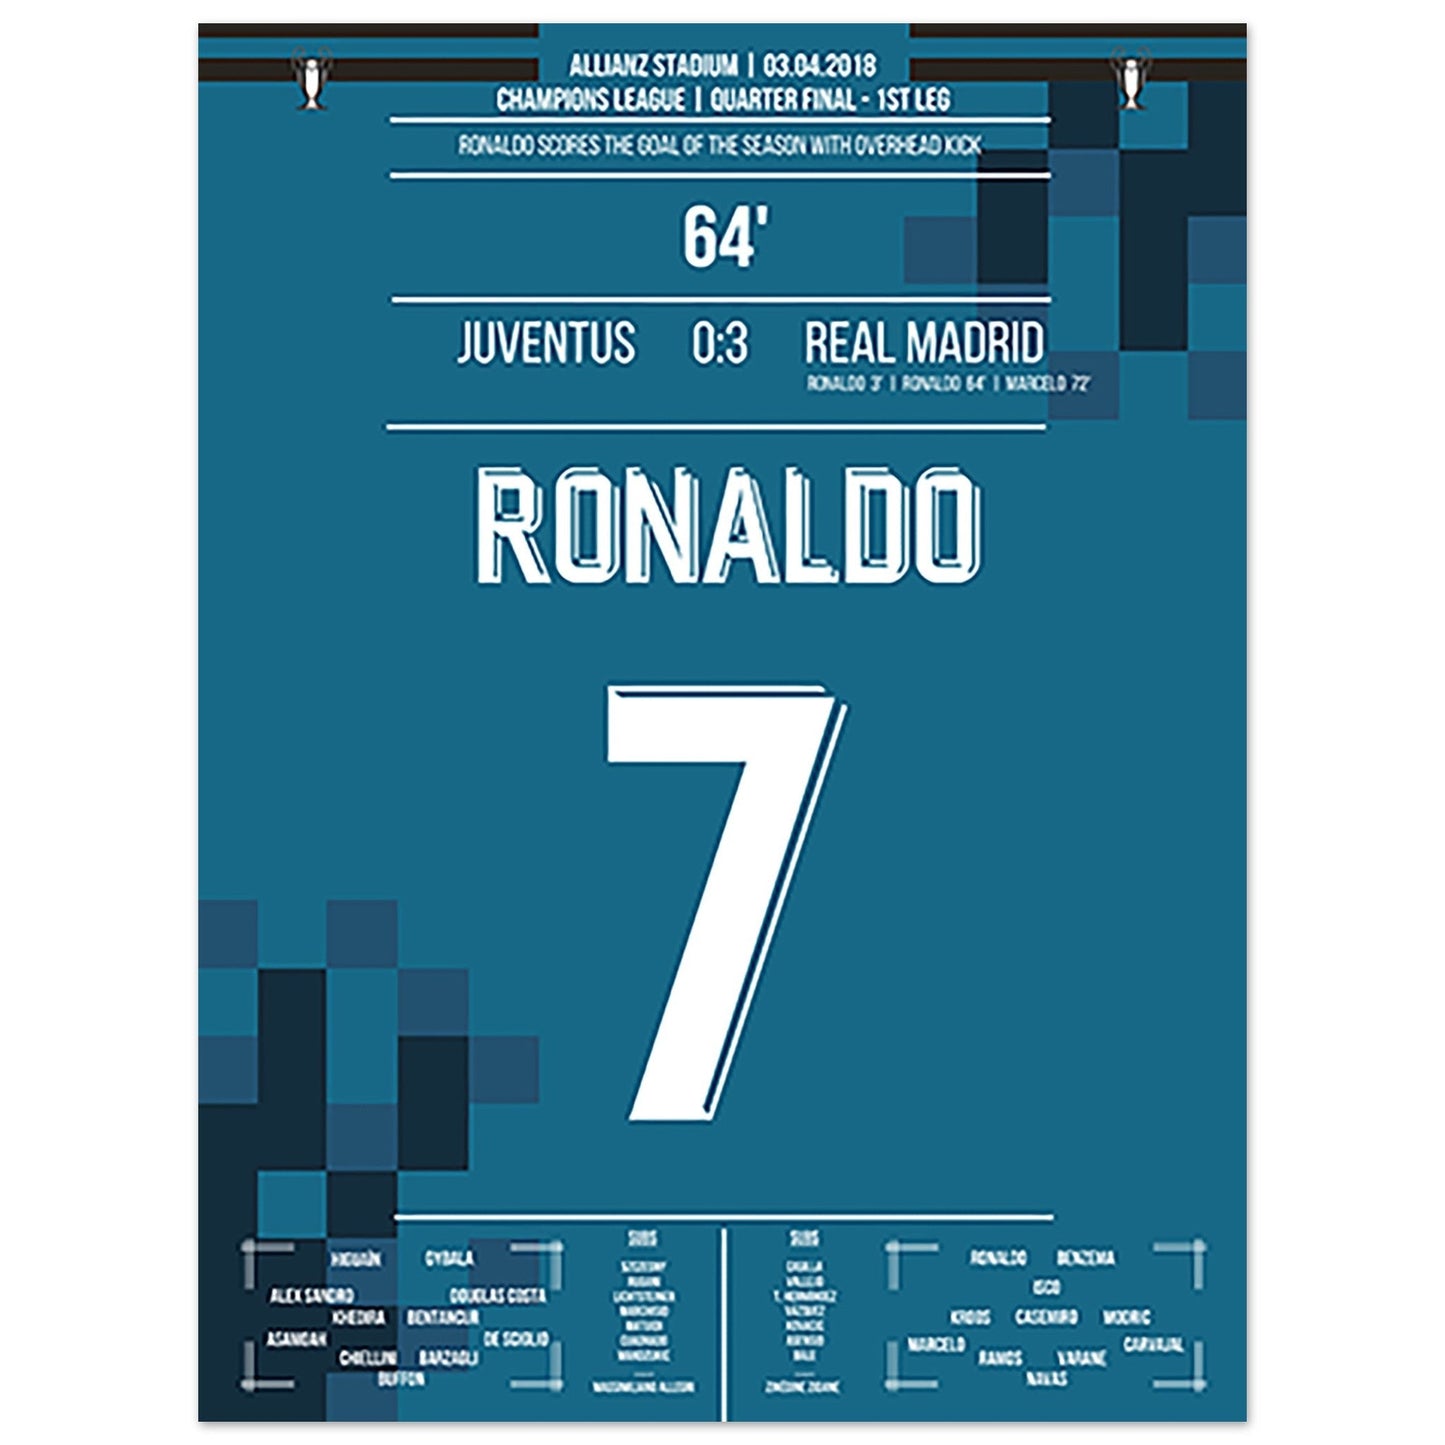 Ronaldo's Fallrückzieher-Tor gegen Juventus 2018 